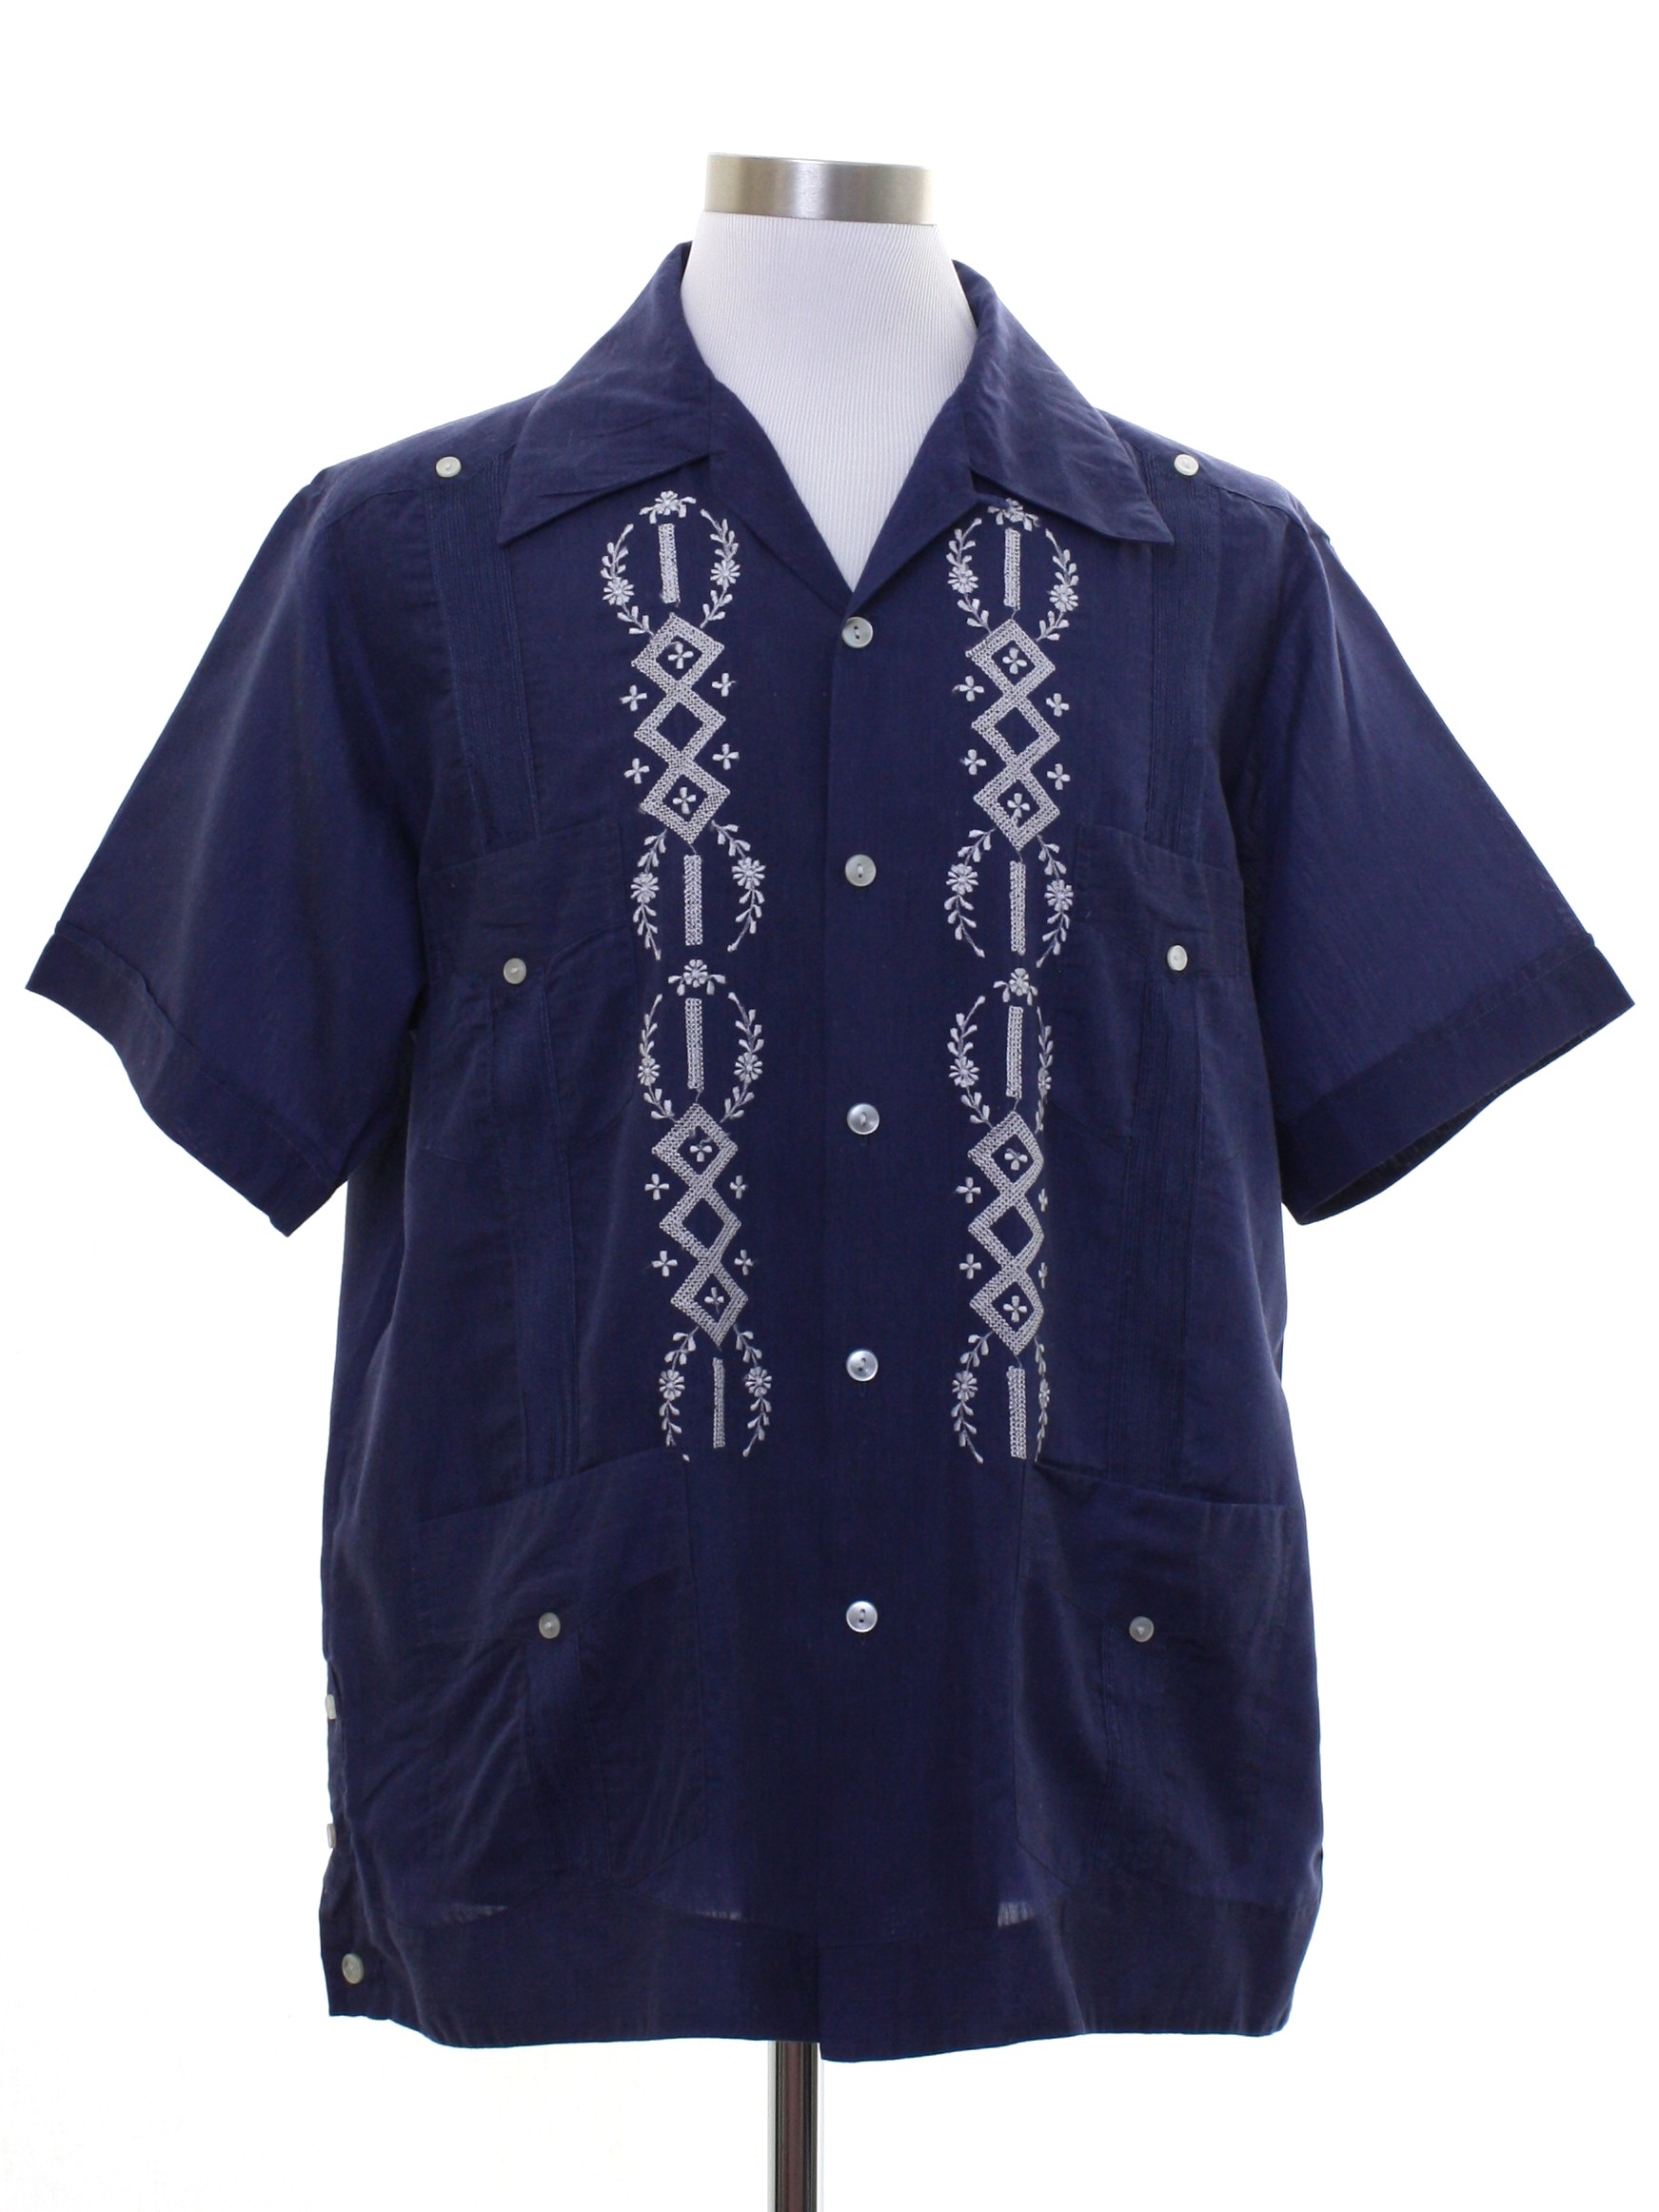 Retro 1970's Guayabera Shirt (Confecciones Yucatecas) : Late 70s or ...